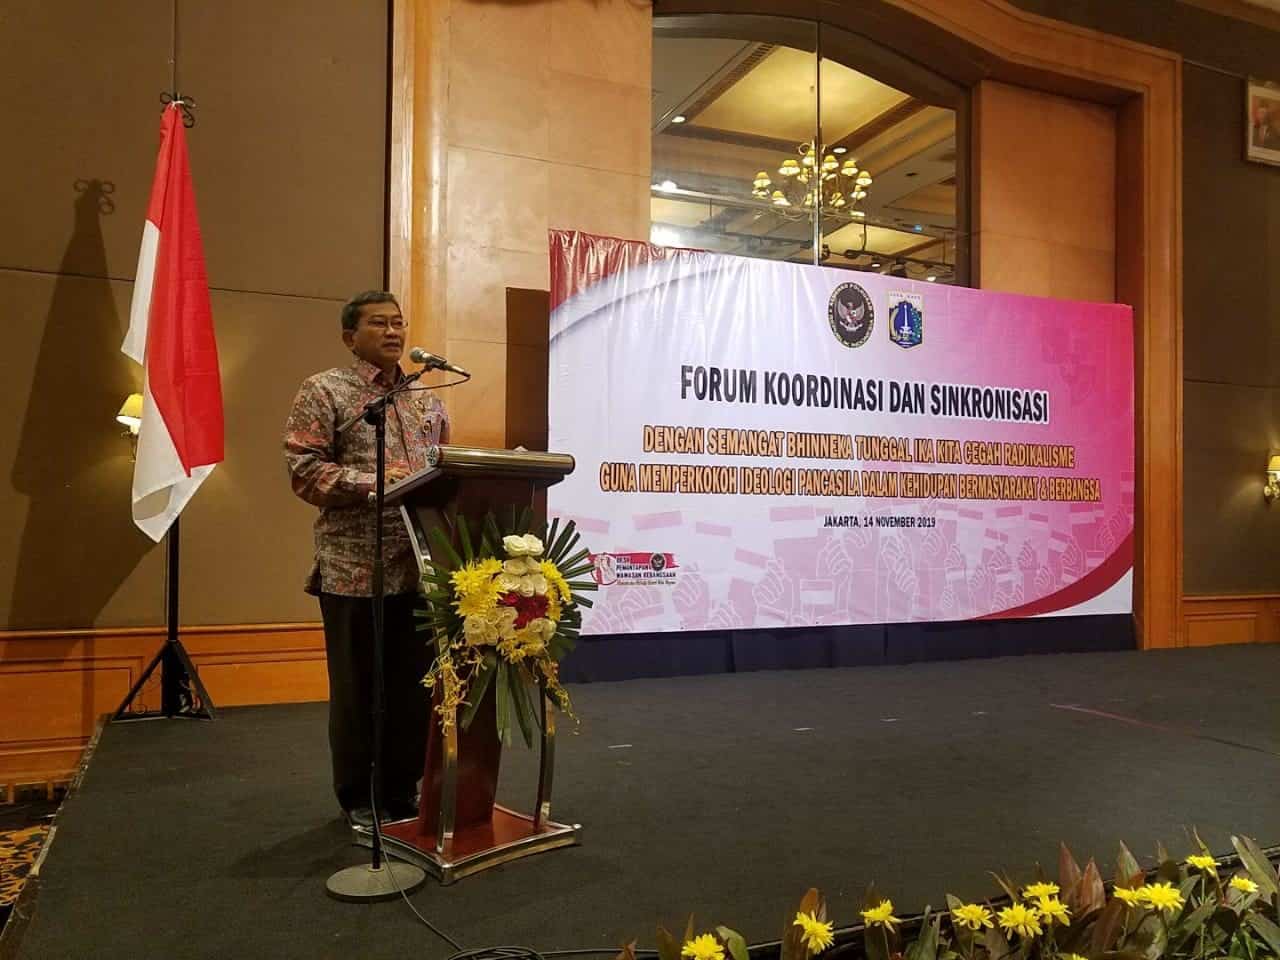 Sebutkan sikap-sikap yang diperlukan untuk mewujudkan persatuan dan kesatuan indonesia